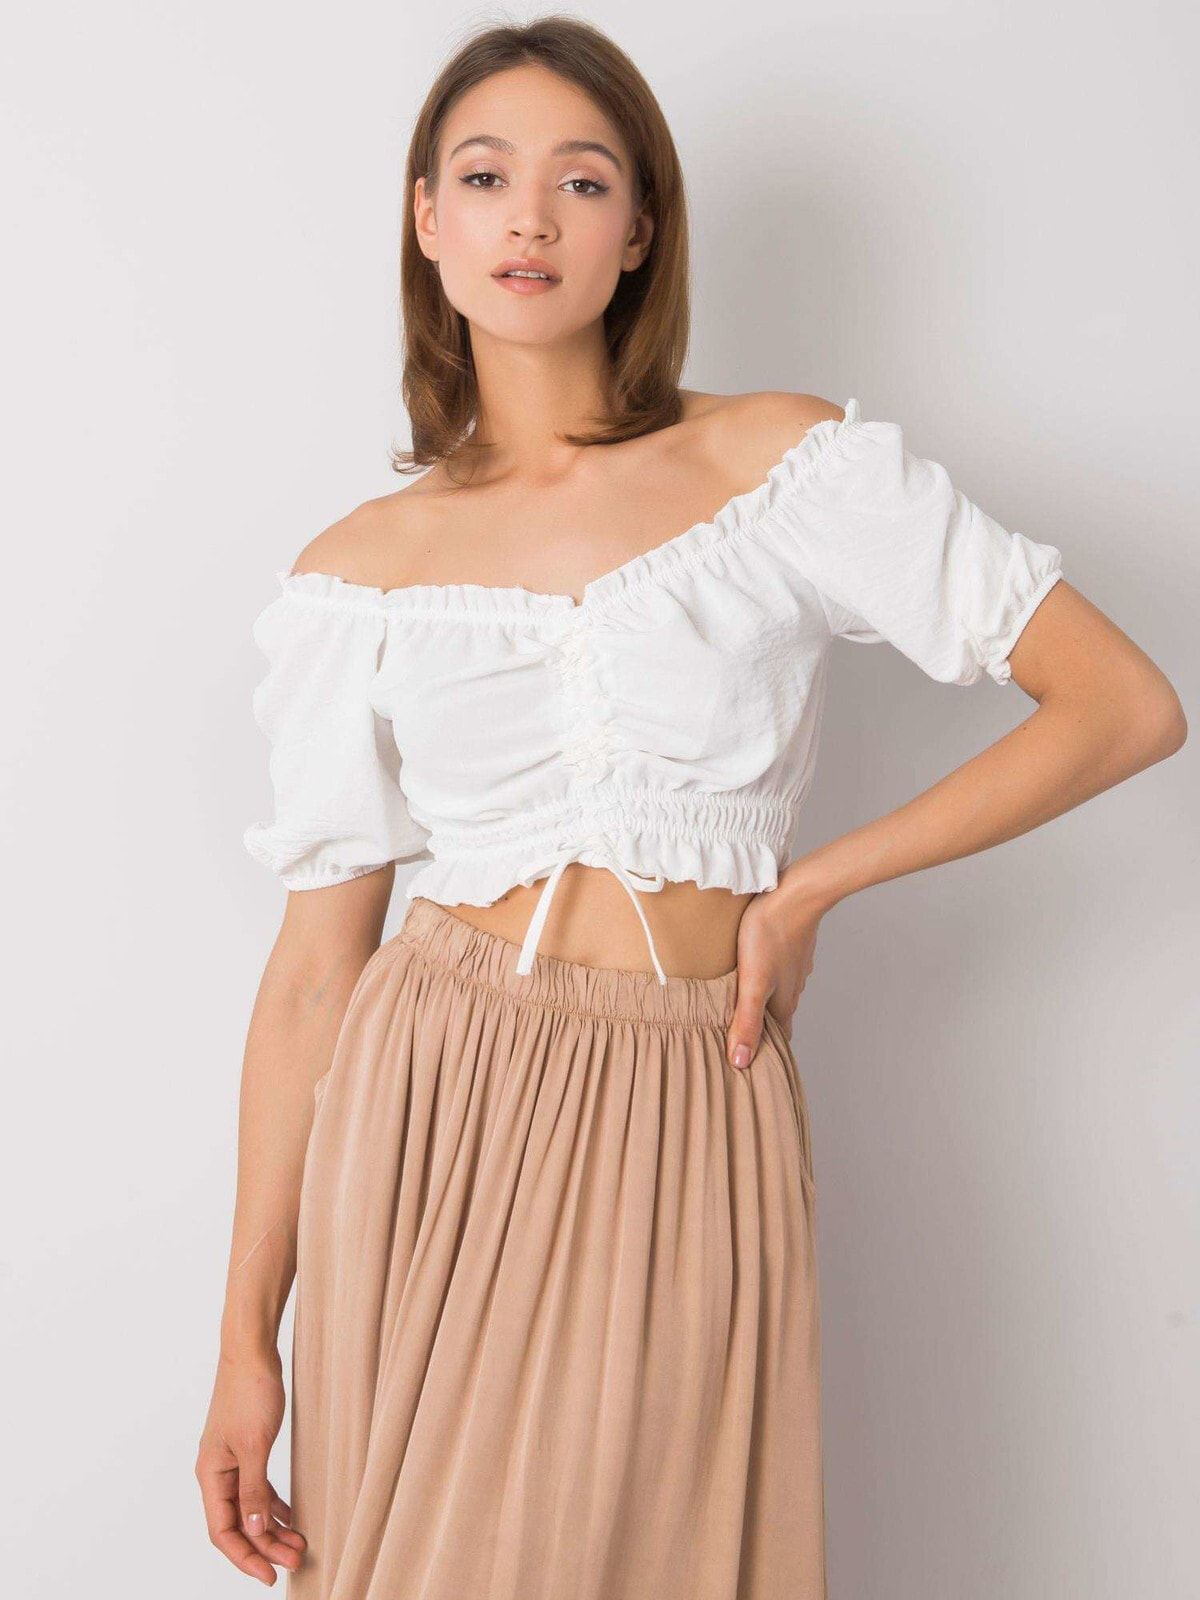 Женская укороченная блузка с коротким рукавом бежевая Factory Price